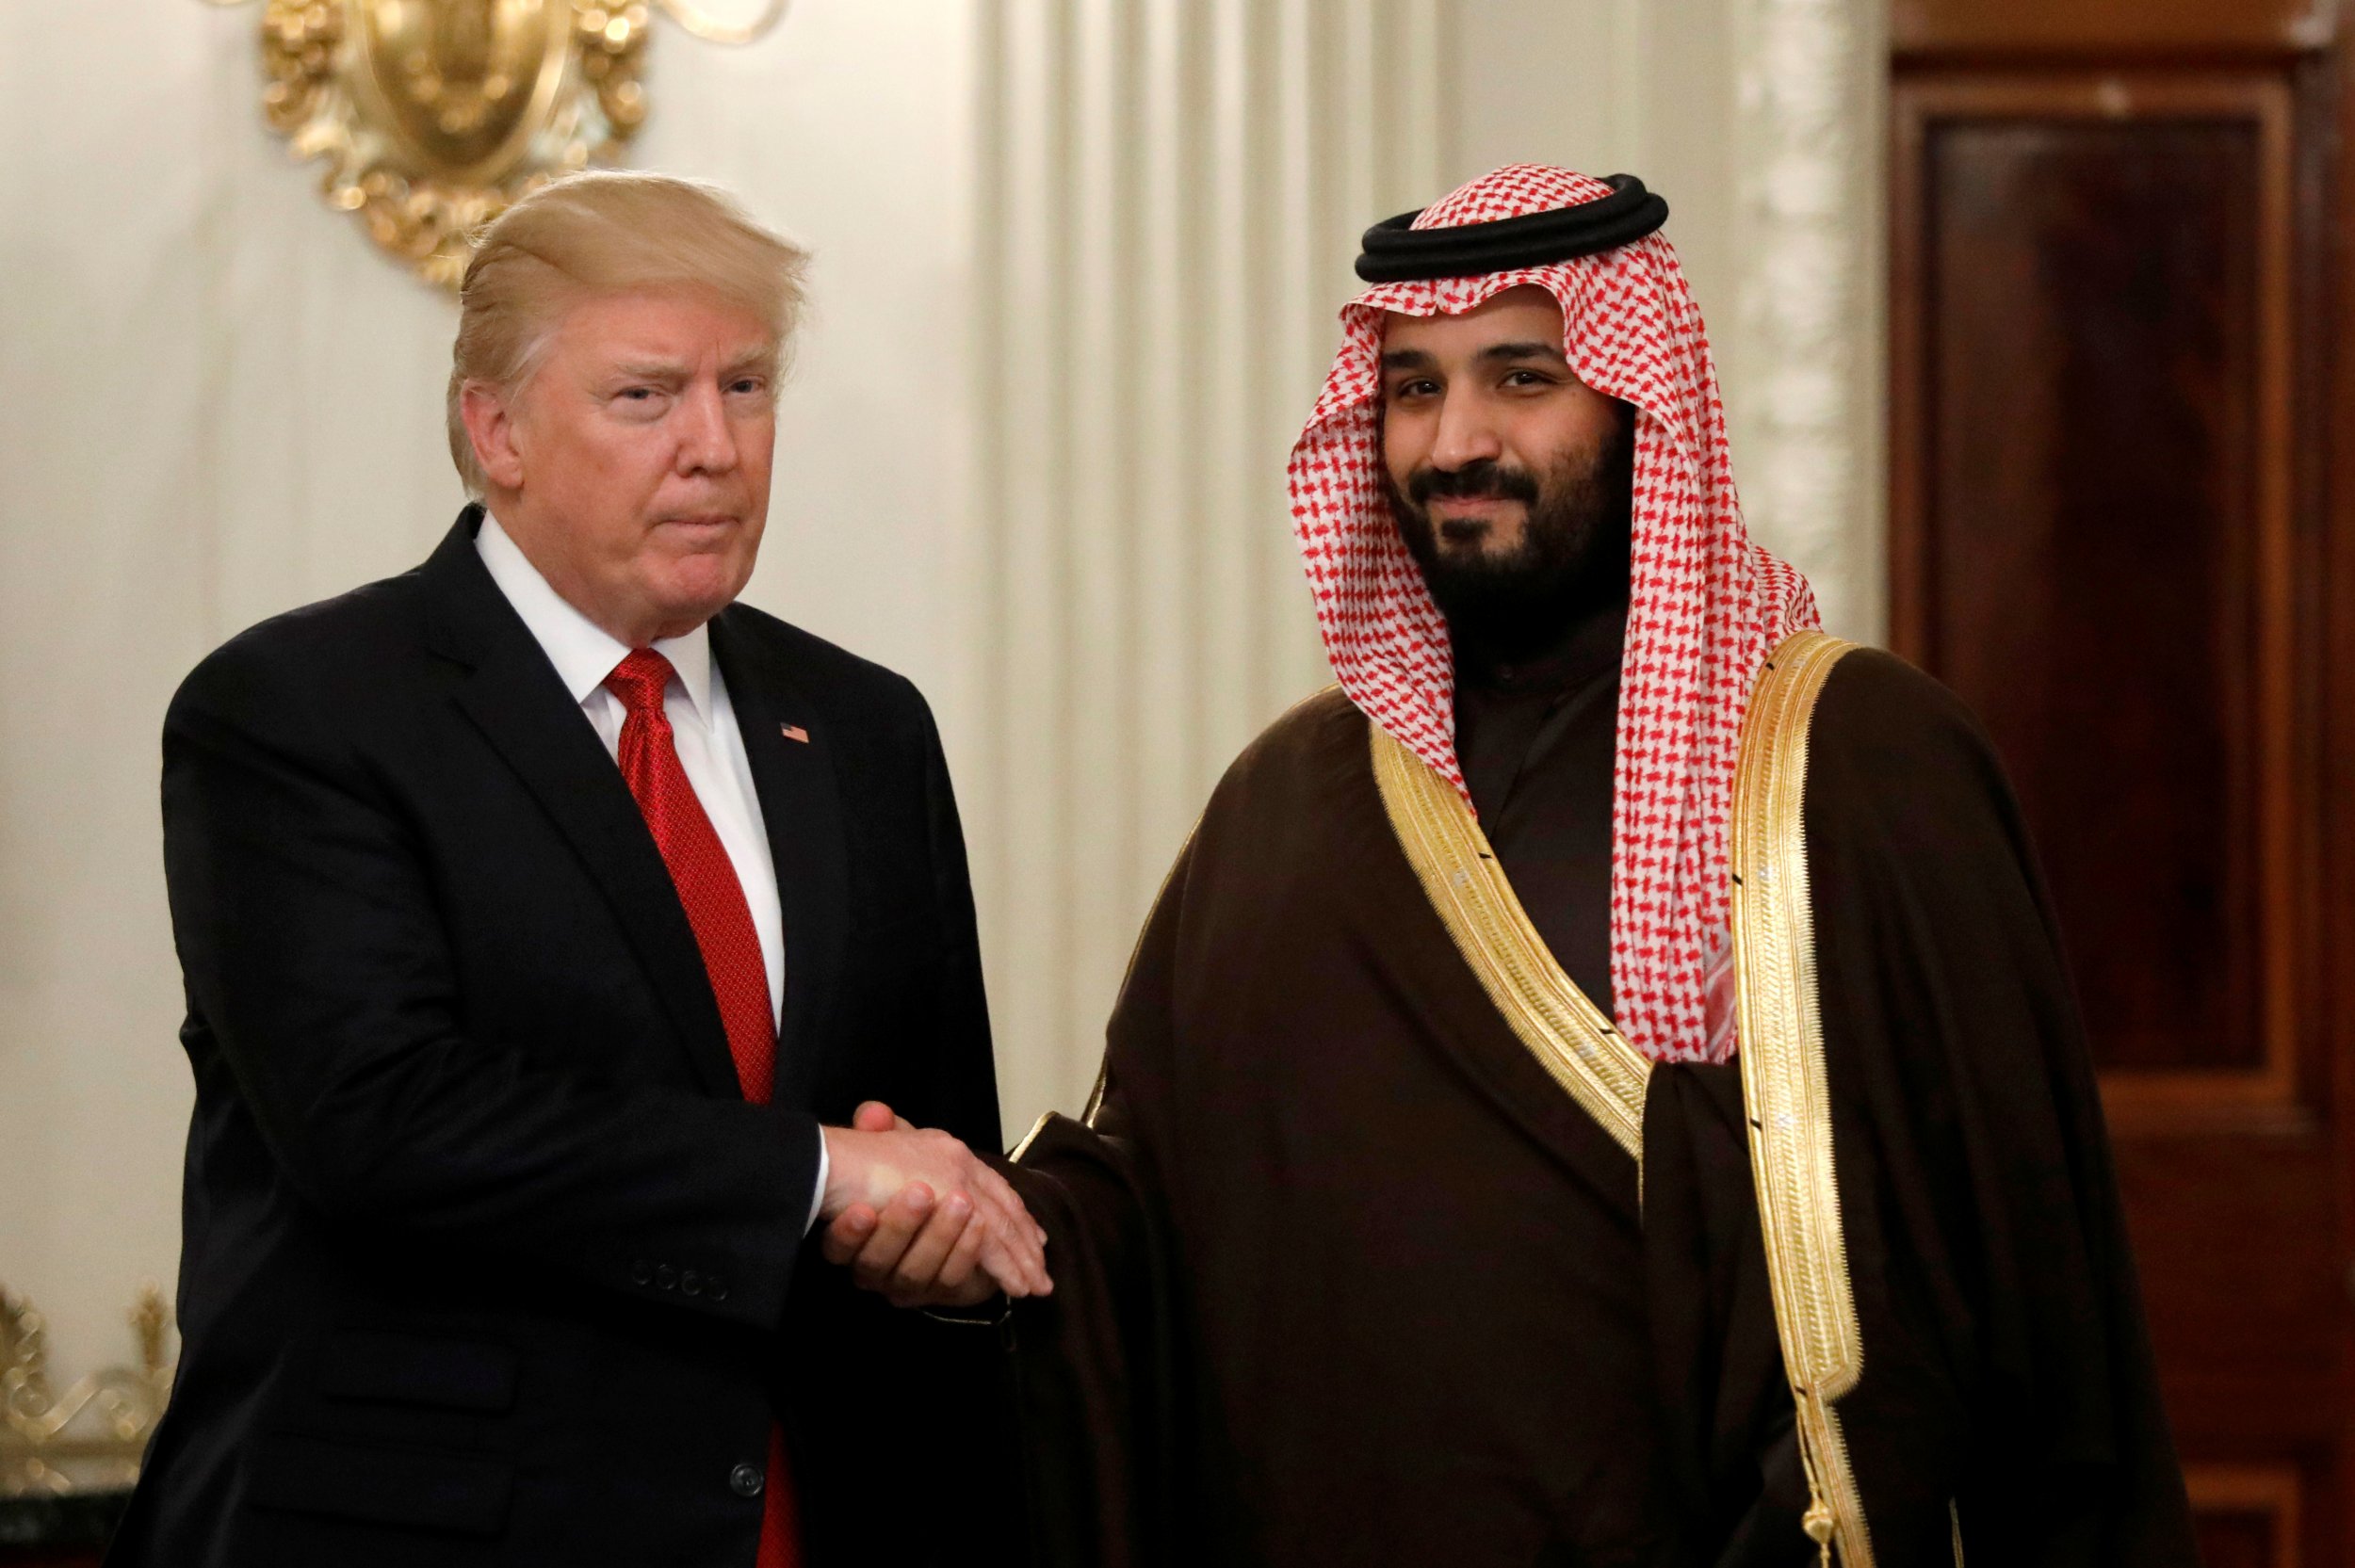 El presidente de EEUU, Donald Trump, y el heredero saudí Mohammed bin Salman, en la Casa Blanca, en Washington, en marzo de 2017. REUTERS/Kevin Lamarque